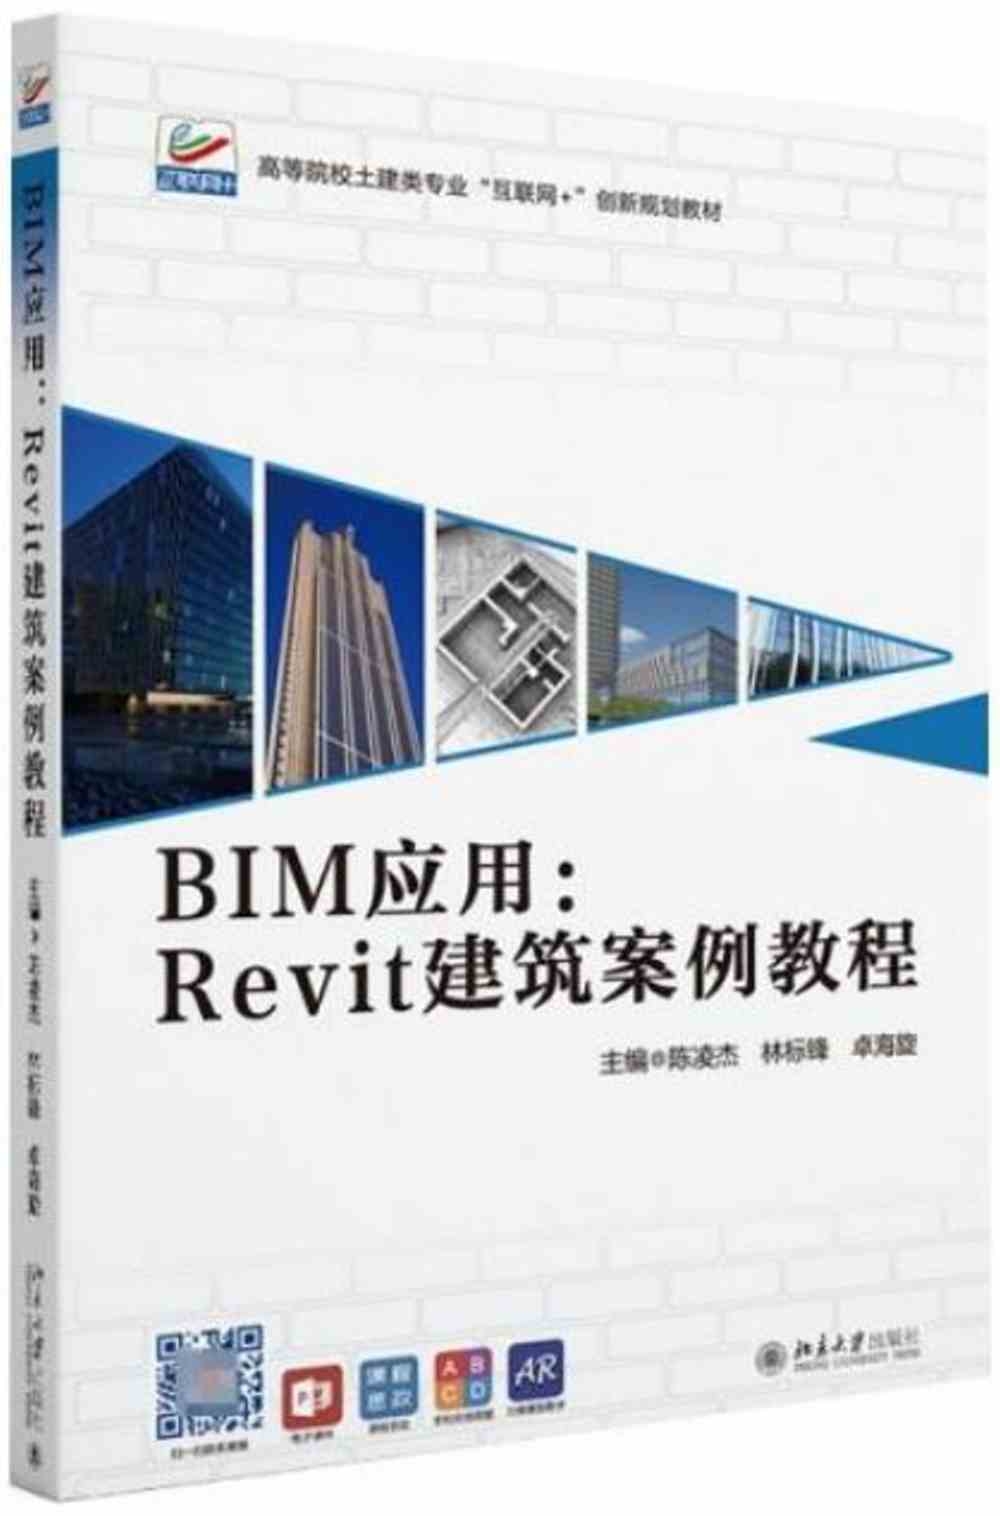 BIM應用：Revit建築案例教程